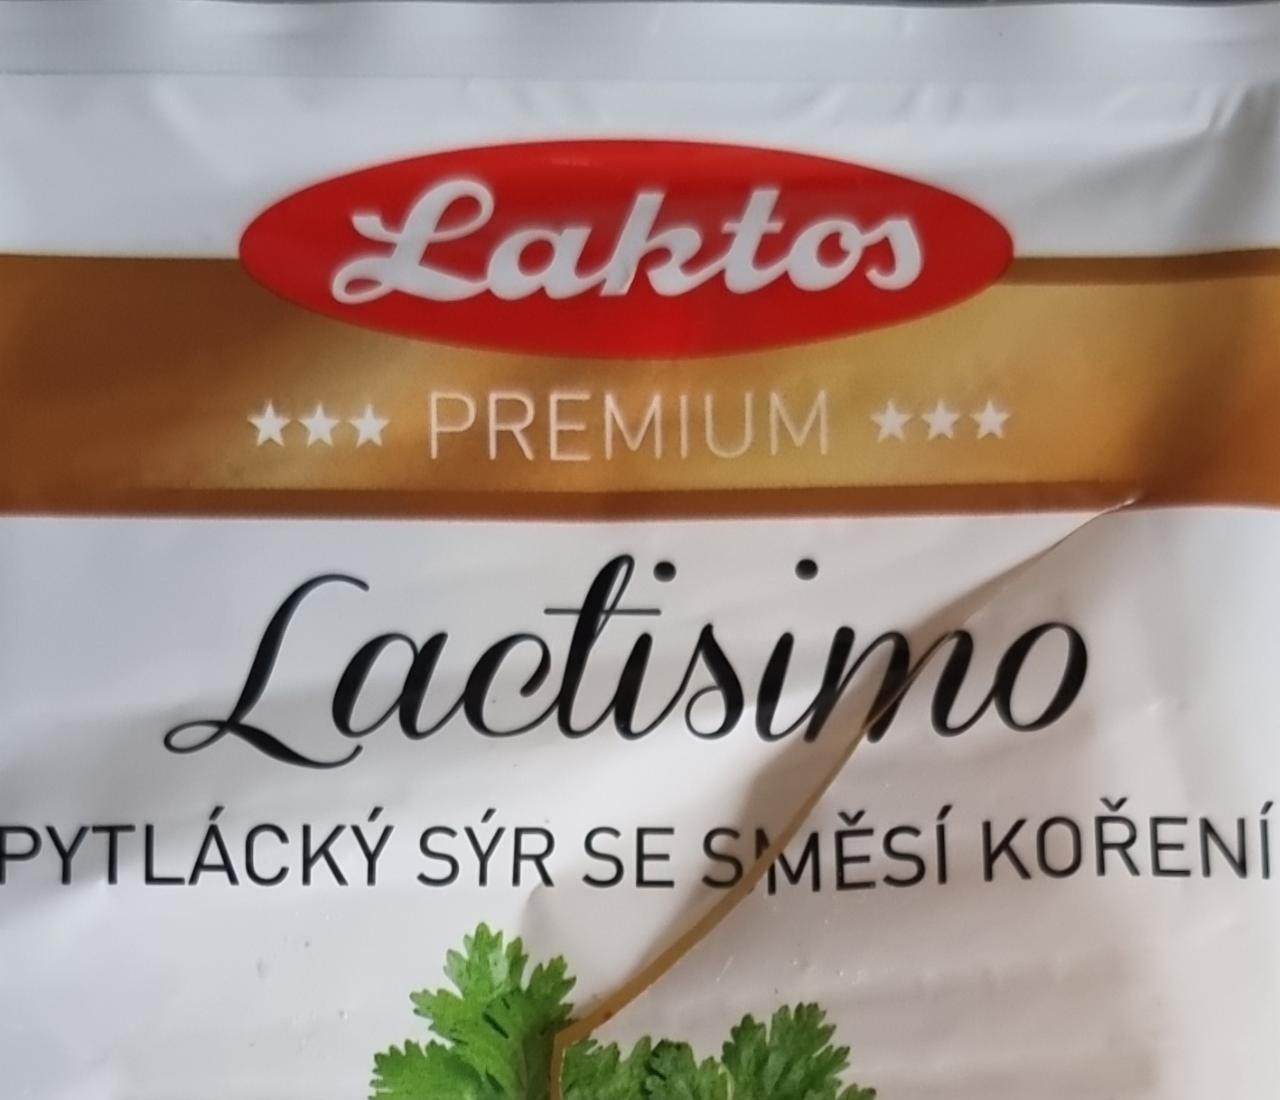 Fotografie - Lactisimo pytlácký sýr se směsí koření Laktos